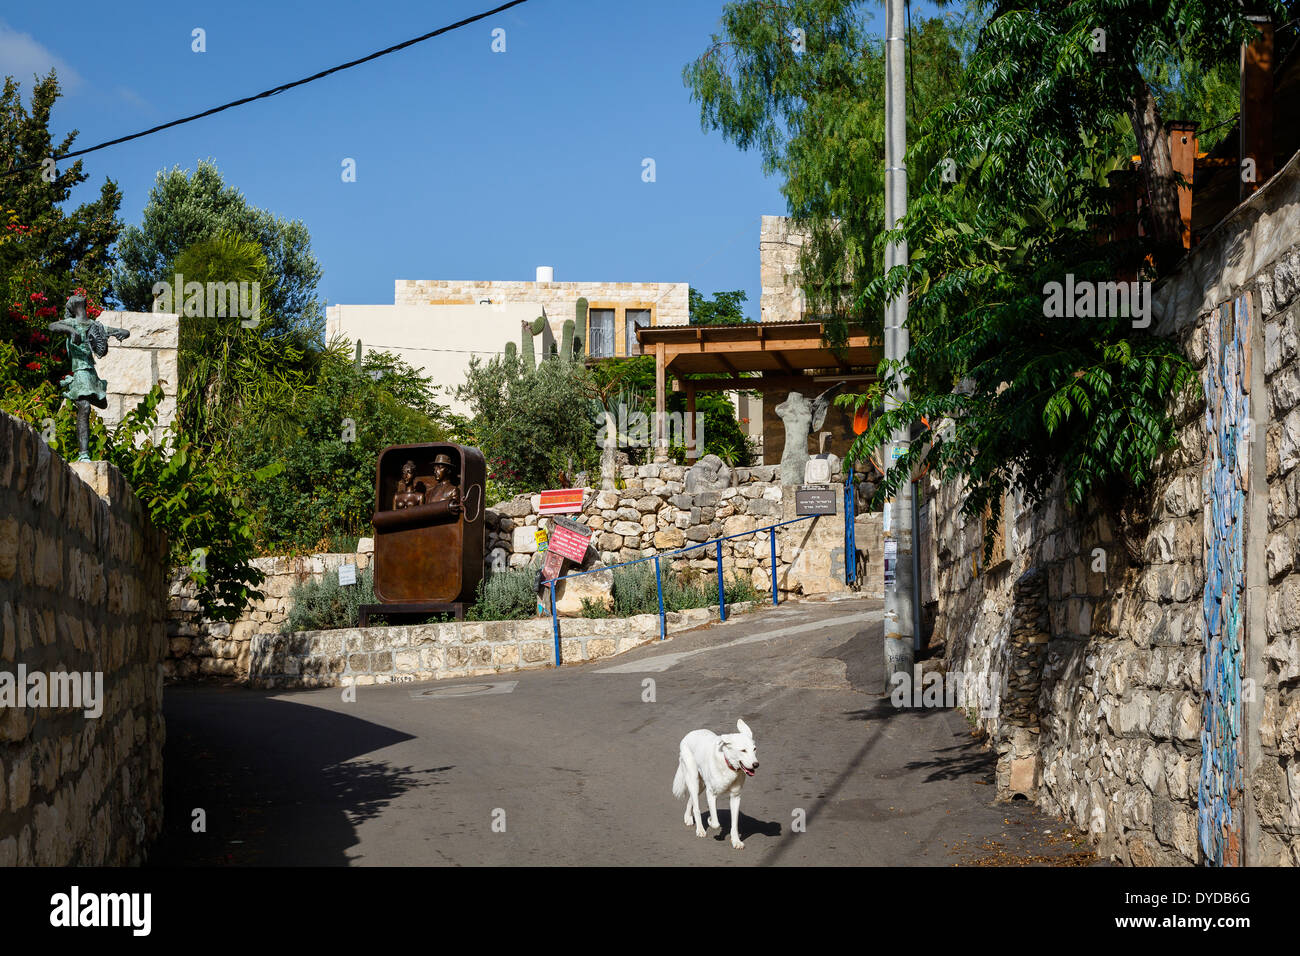 La localidad de artistas de Ein Hod, Carmelo montañas, Israel Foto de stock